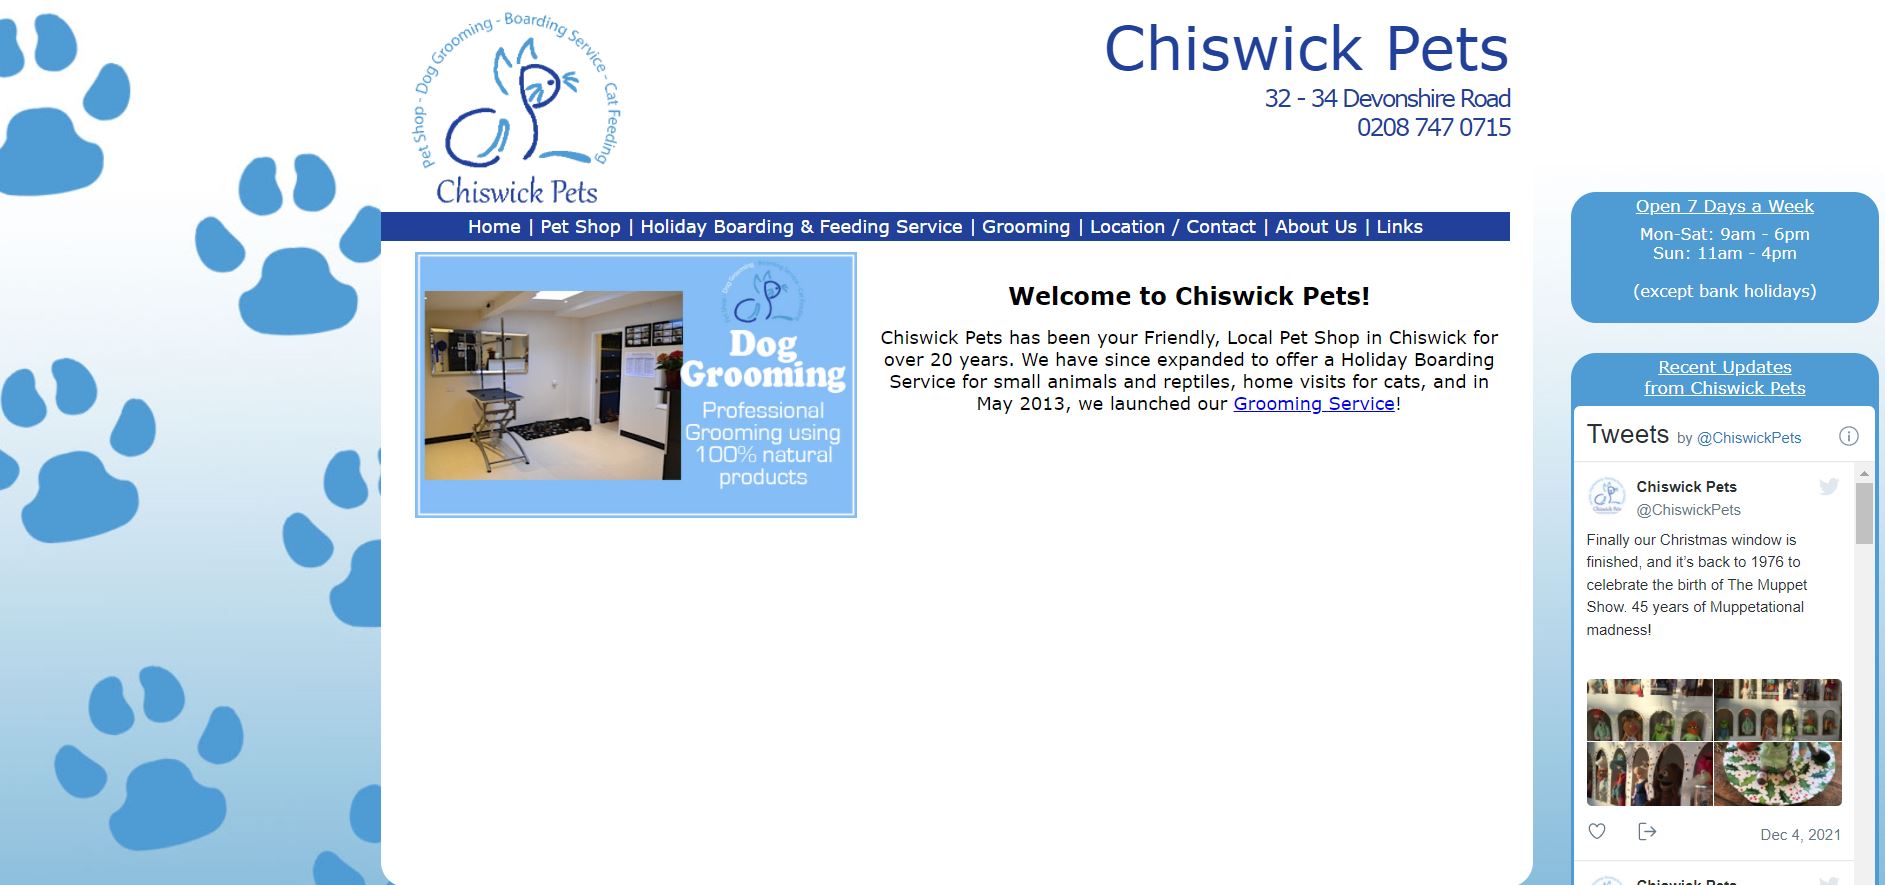 Chiswick Pets